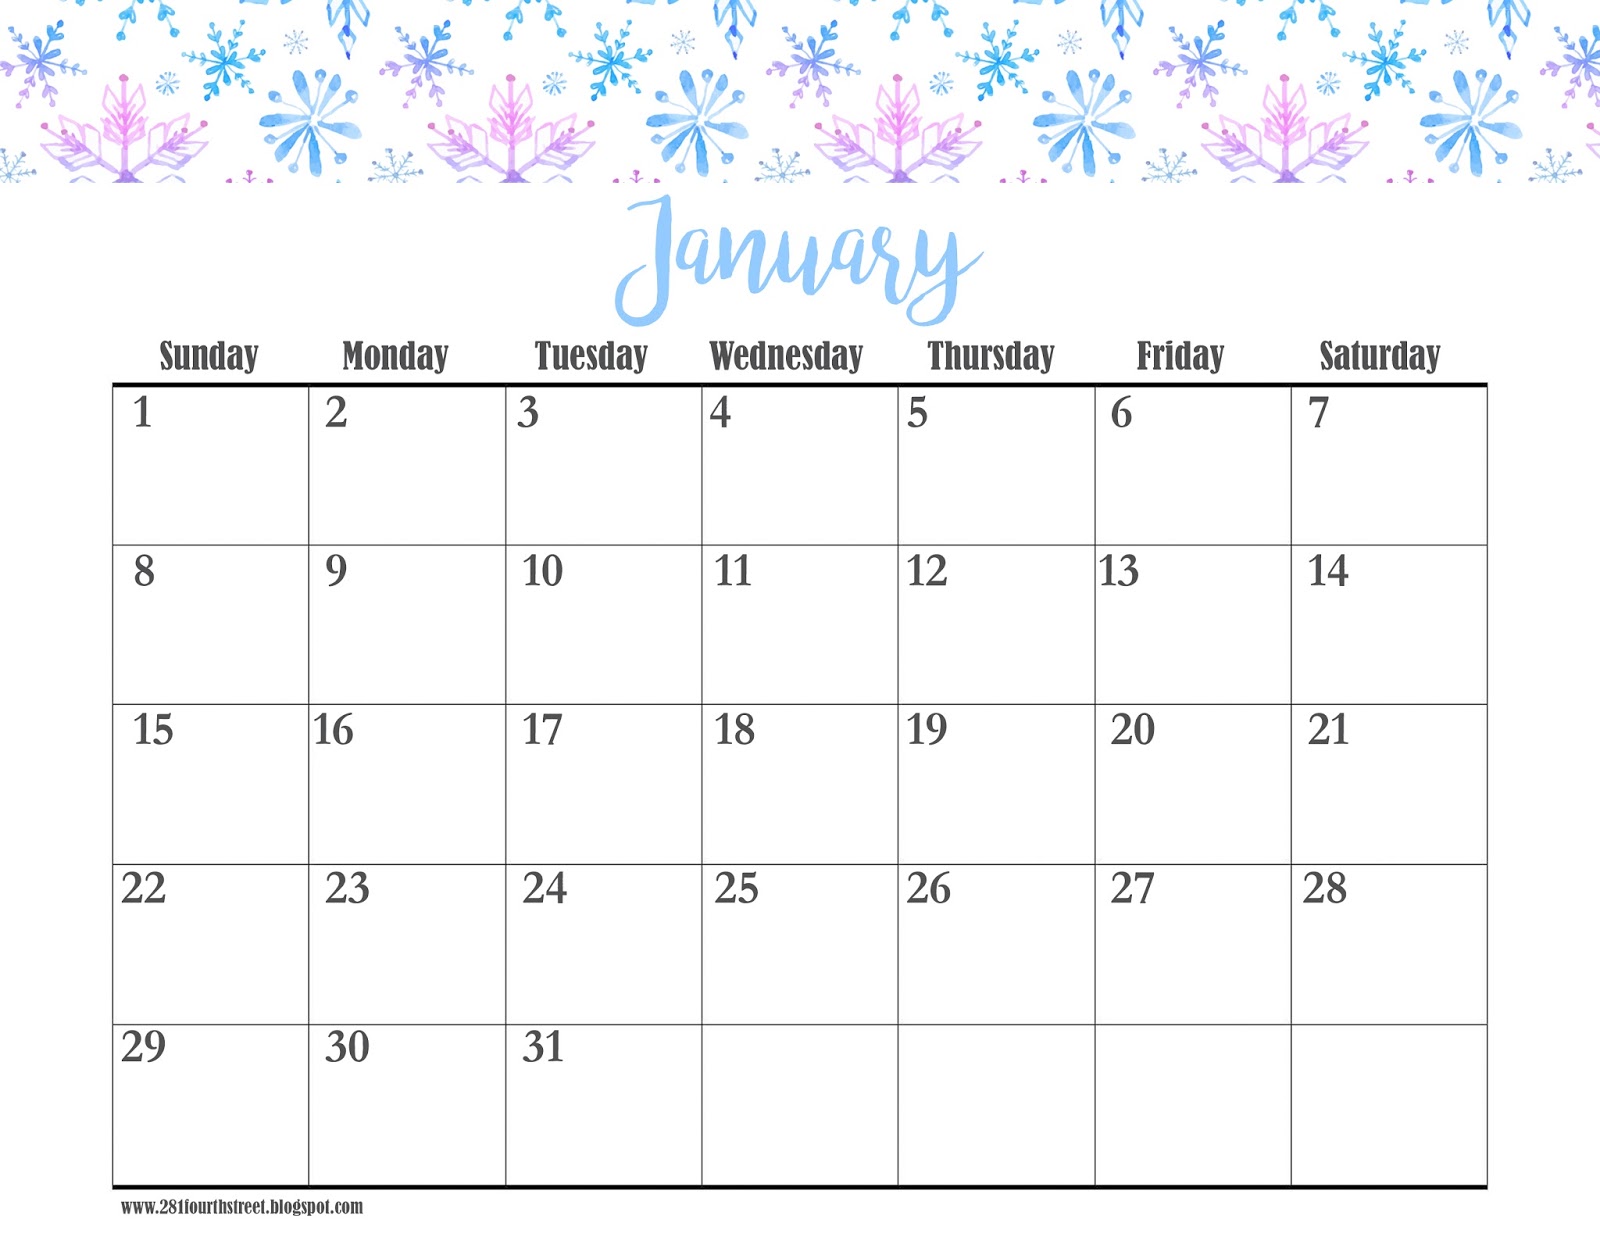 Календарь январь 2017